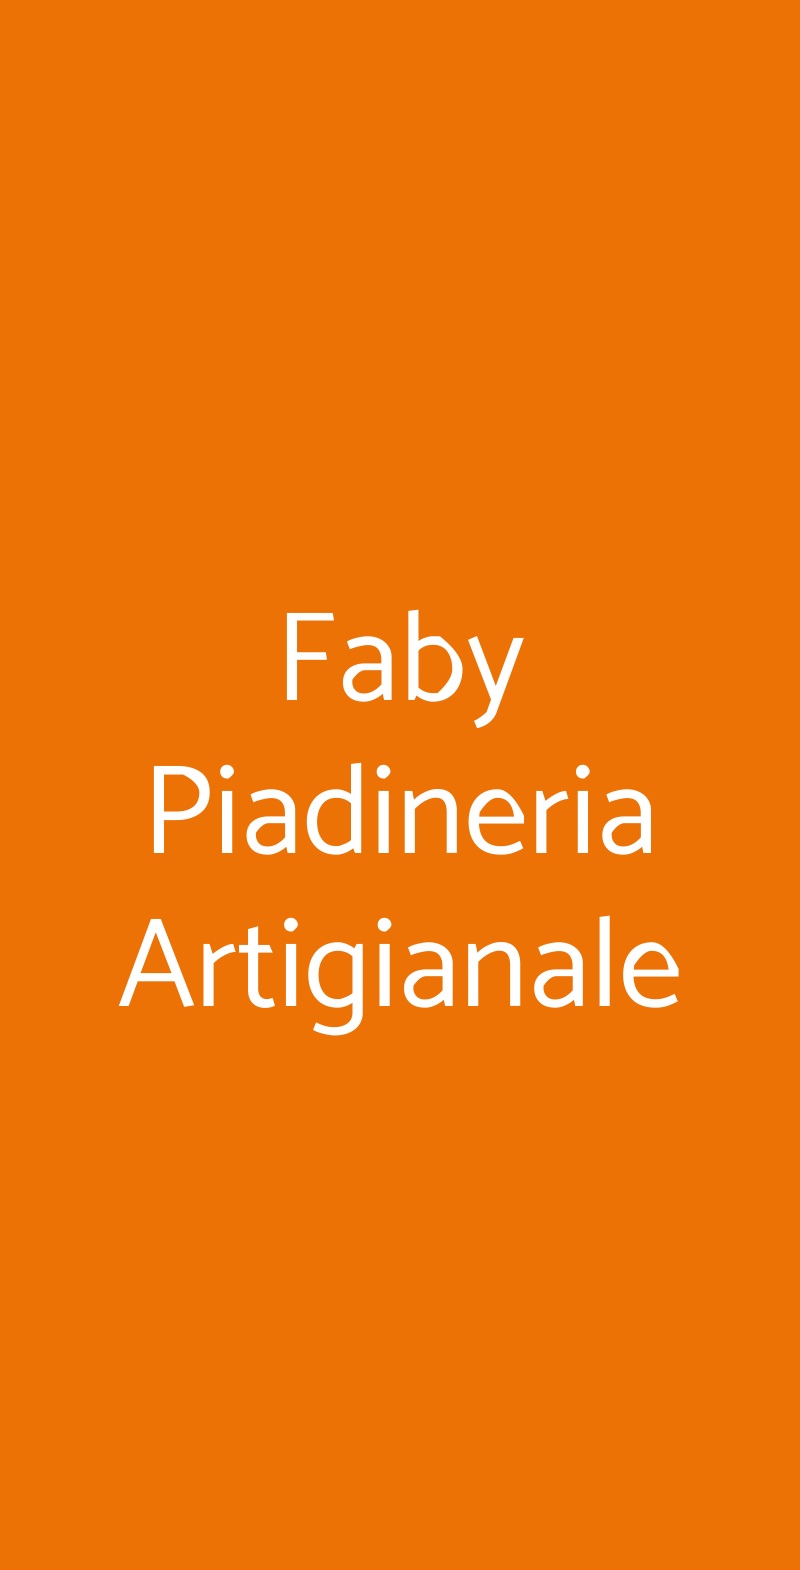 Faby Piadineria Artigianale Caravaggio menù 1 pagina